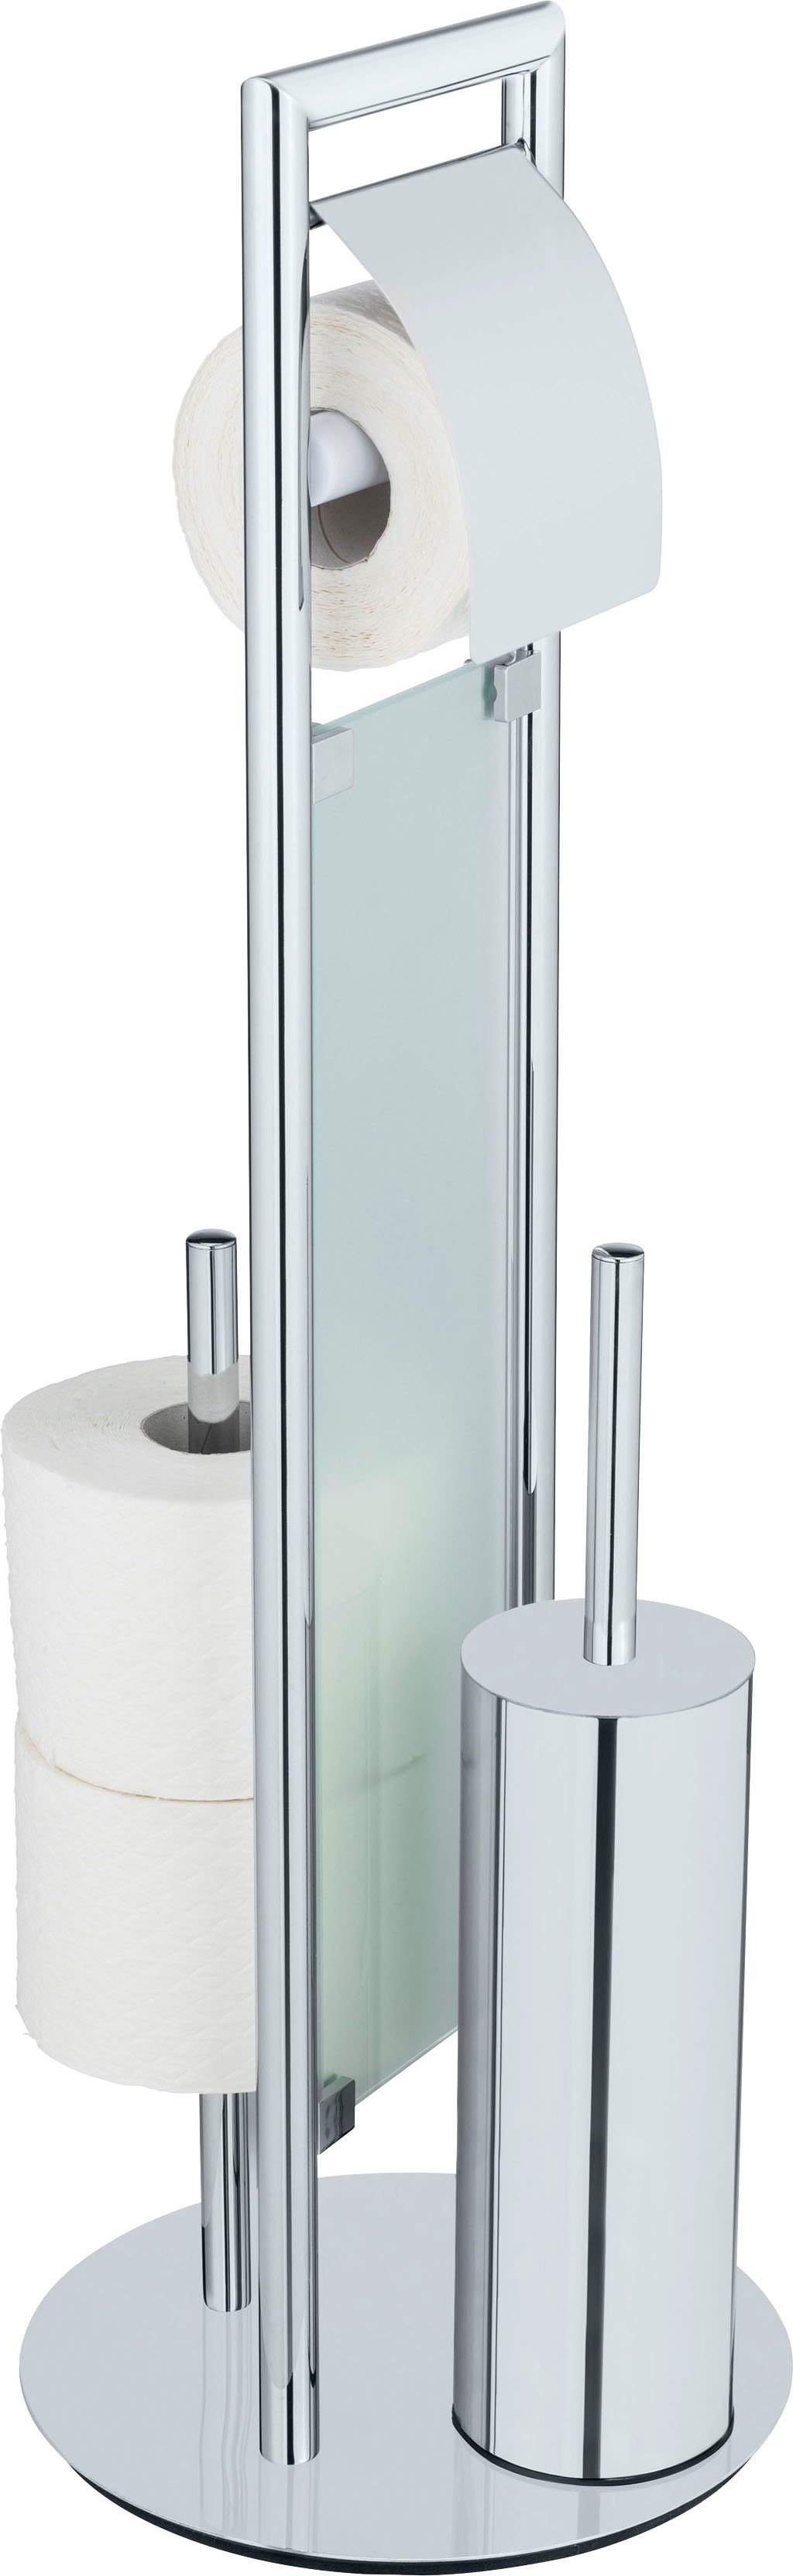 WENKO WC-Garnitur Sulmona, mit Silikon-Bürstenkopf, Rollen Ersatzrollenhalter mit Toilettenpapierhalter zwei für Deckel